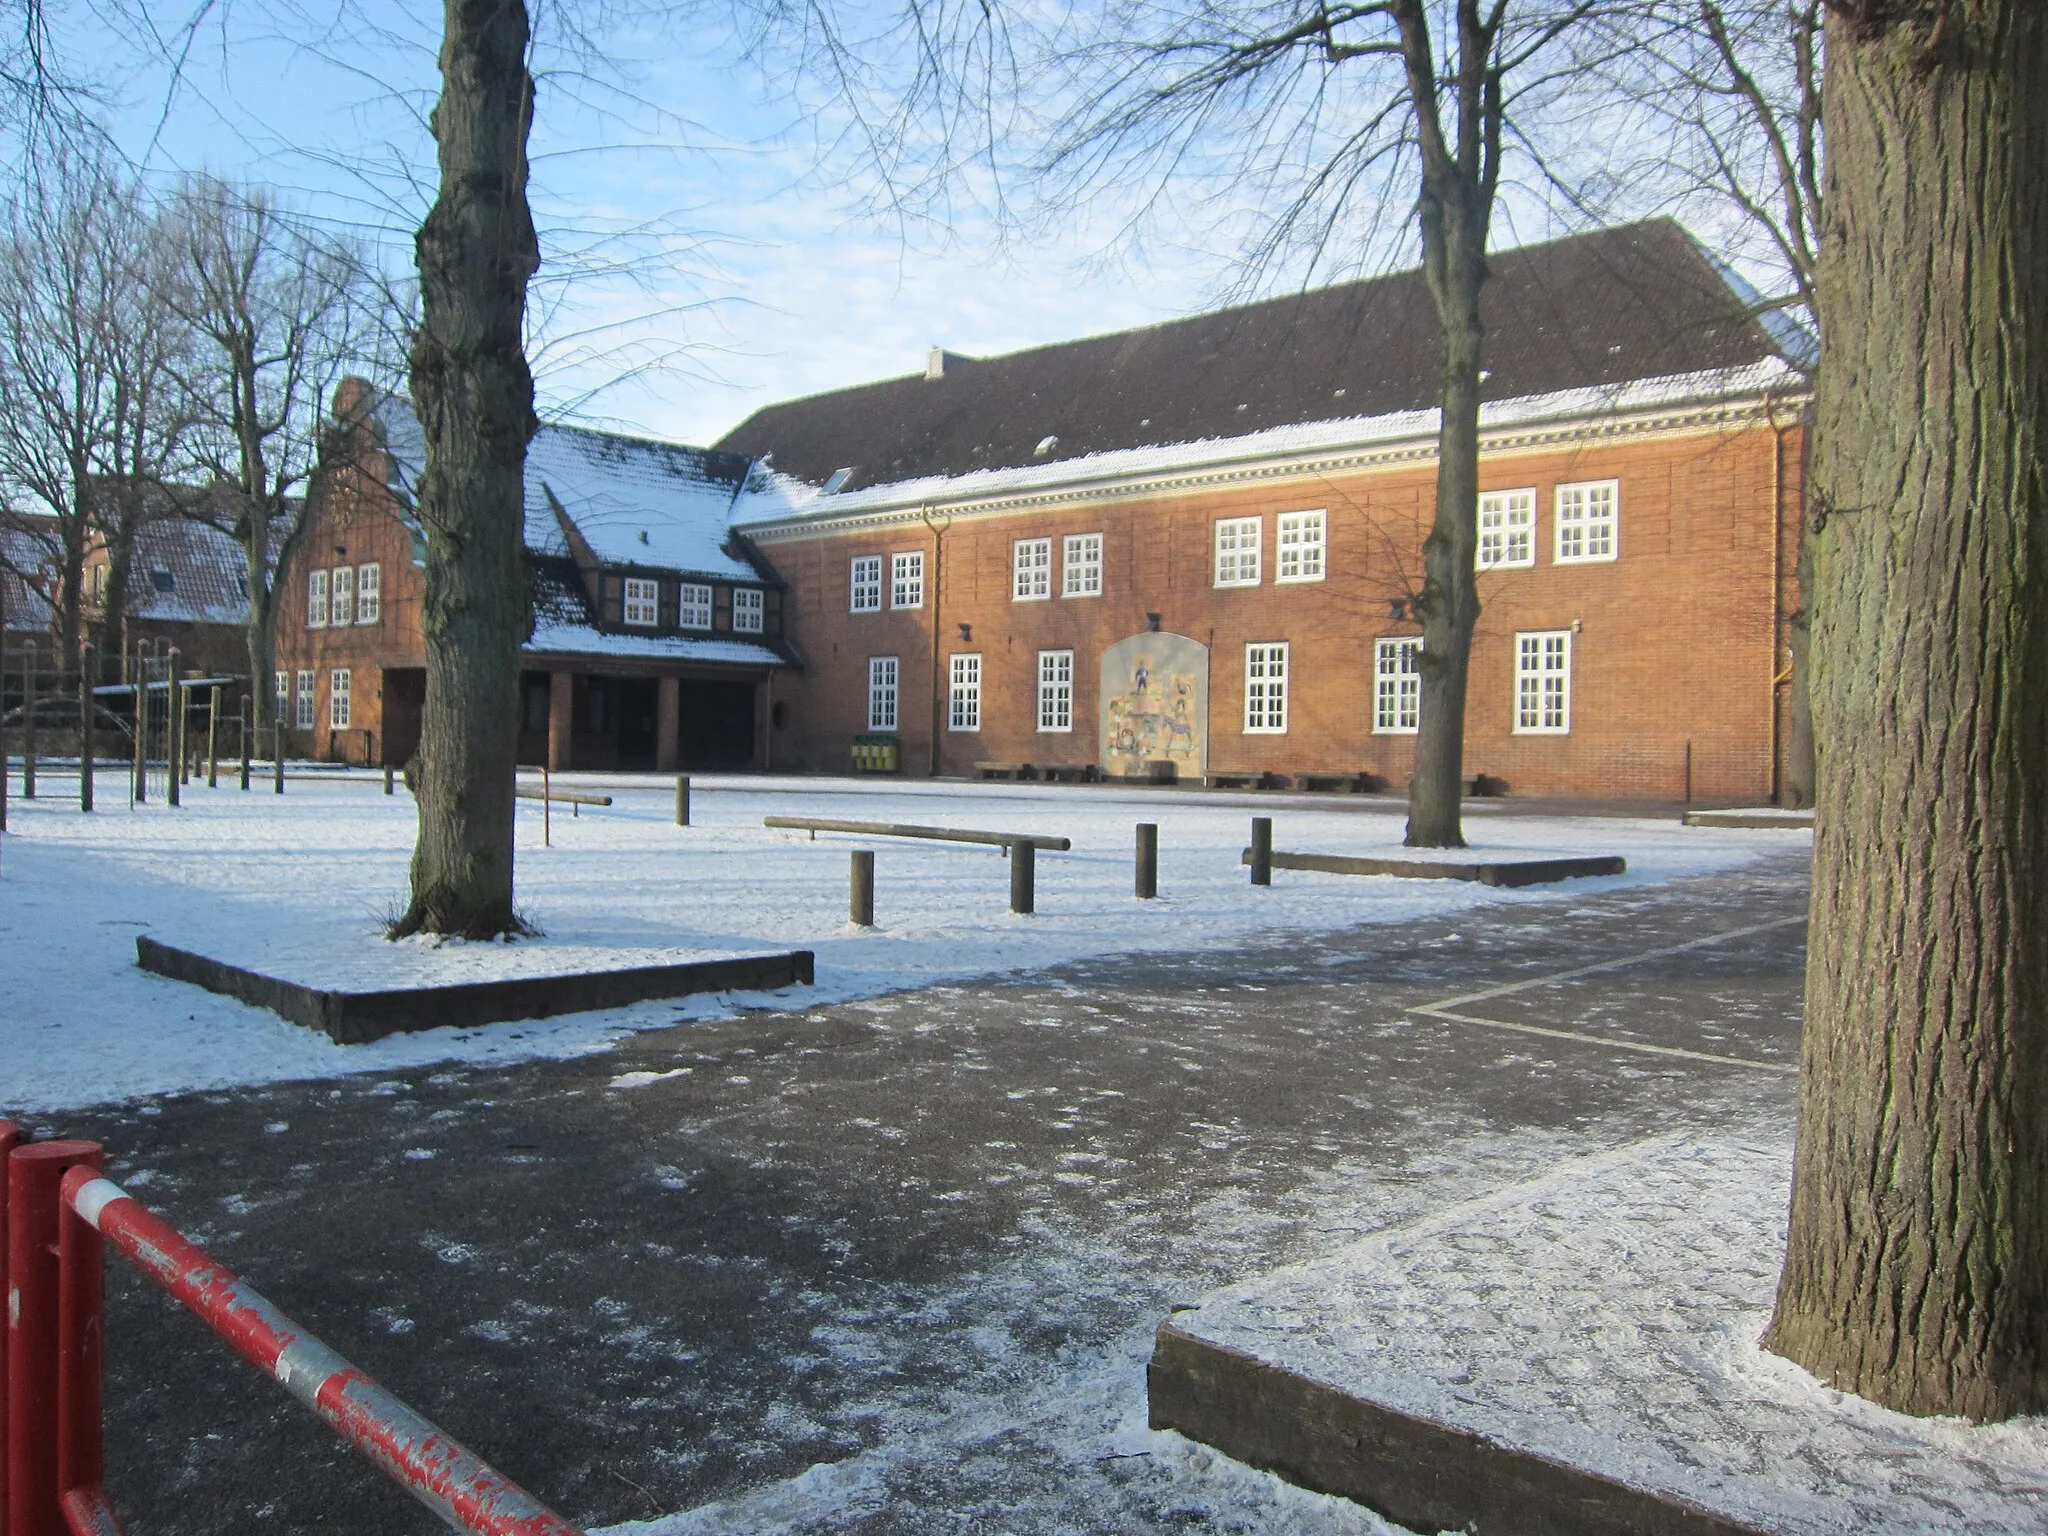 Photo showing: School "Brüder-Grimm-Schule" in Kronshagen